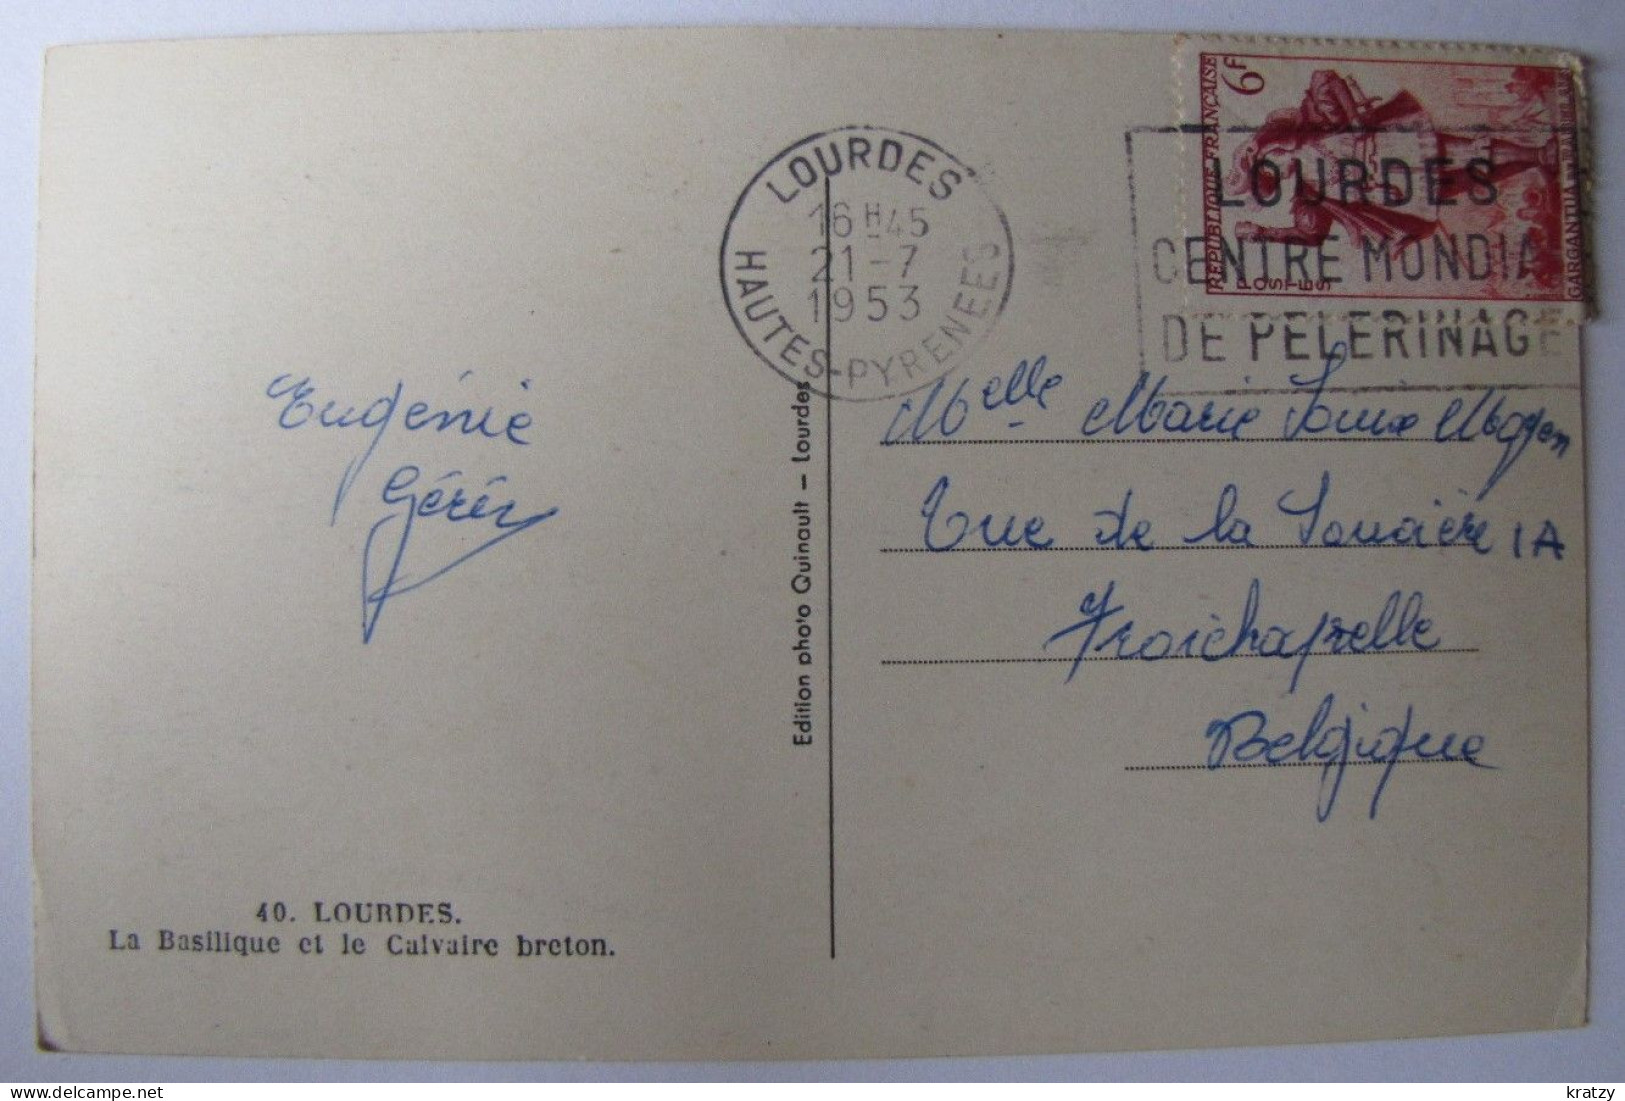 FRANCE - HAUTES PYRENEES - LOURDES - La Basilique Et Le Calvaire Breton - 1953 - Lourdes